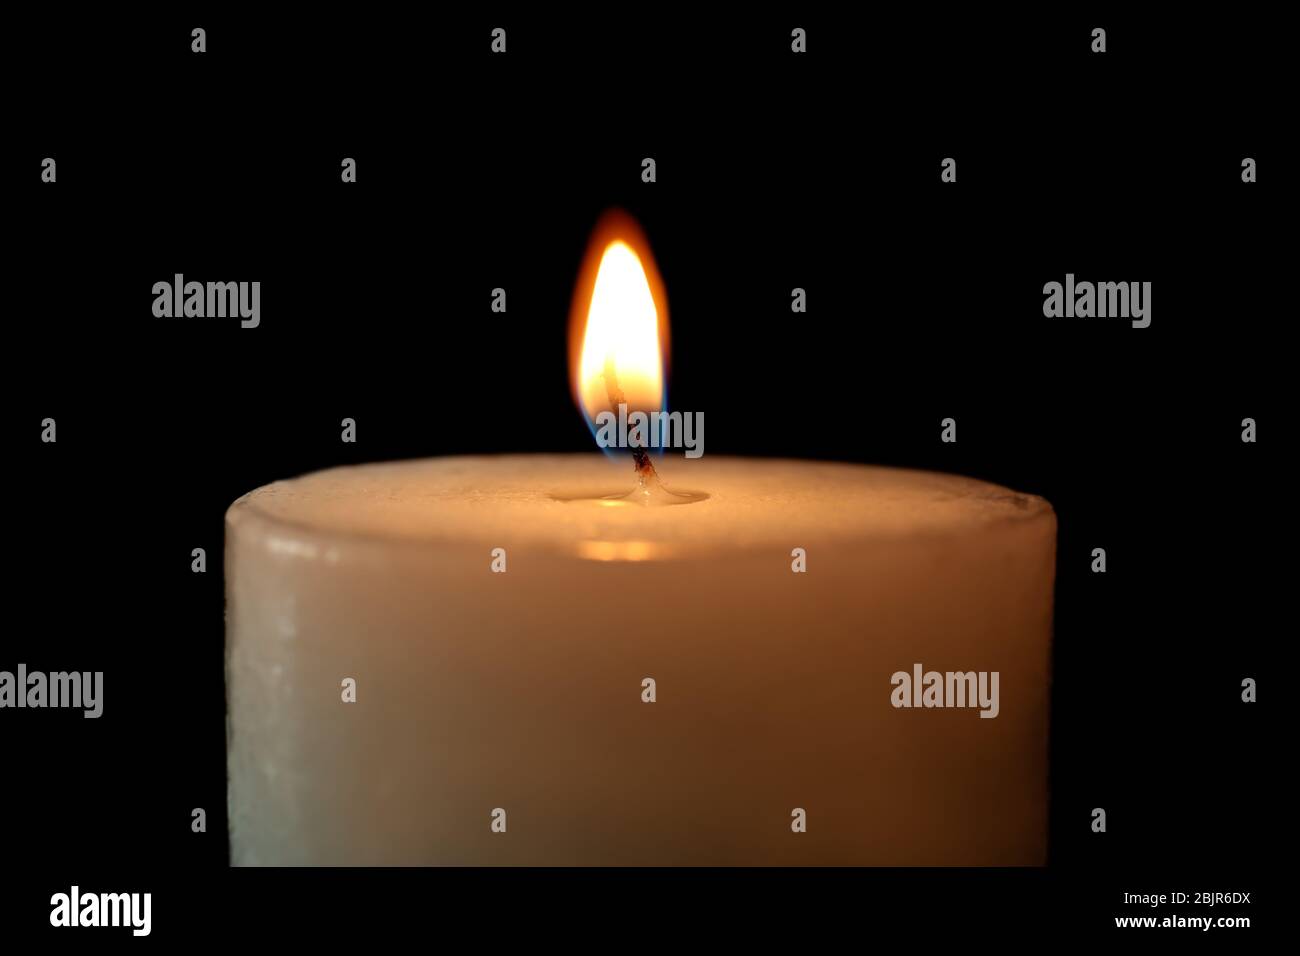 Burning candle on black background, closeup Stock Photo